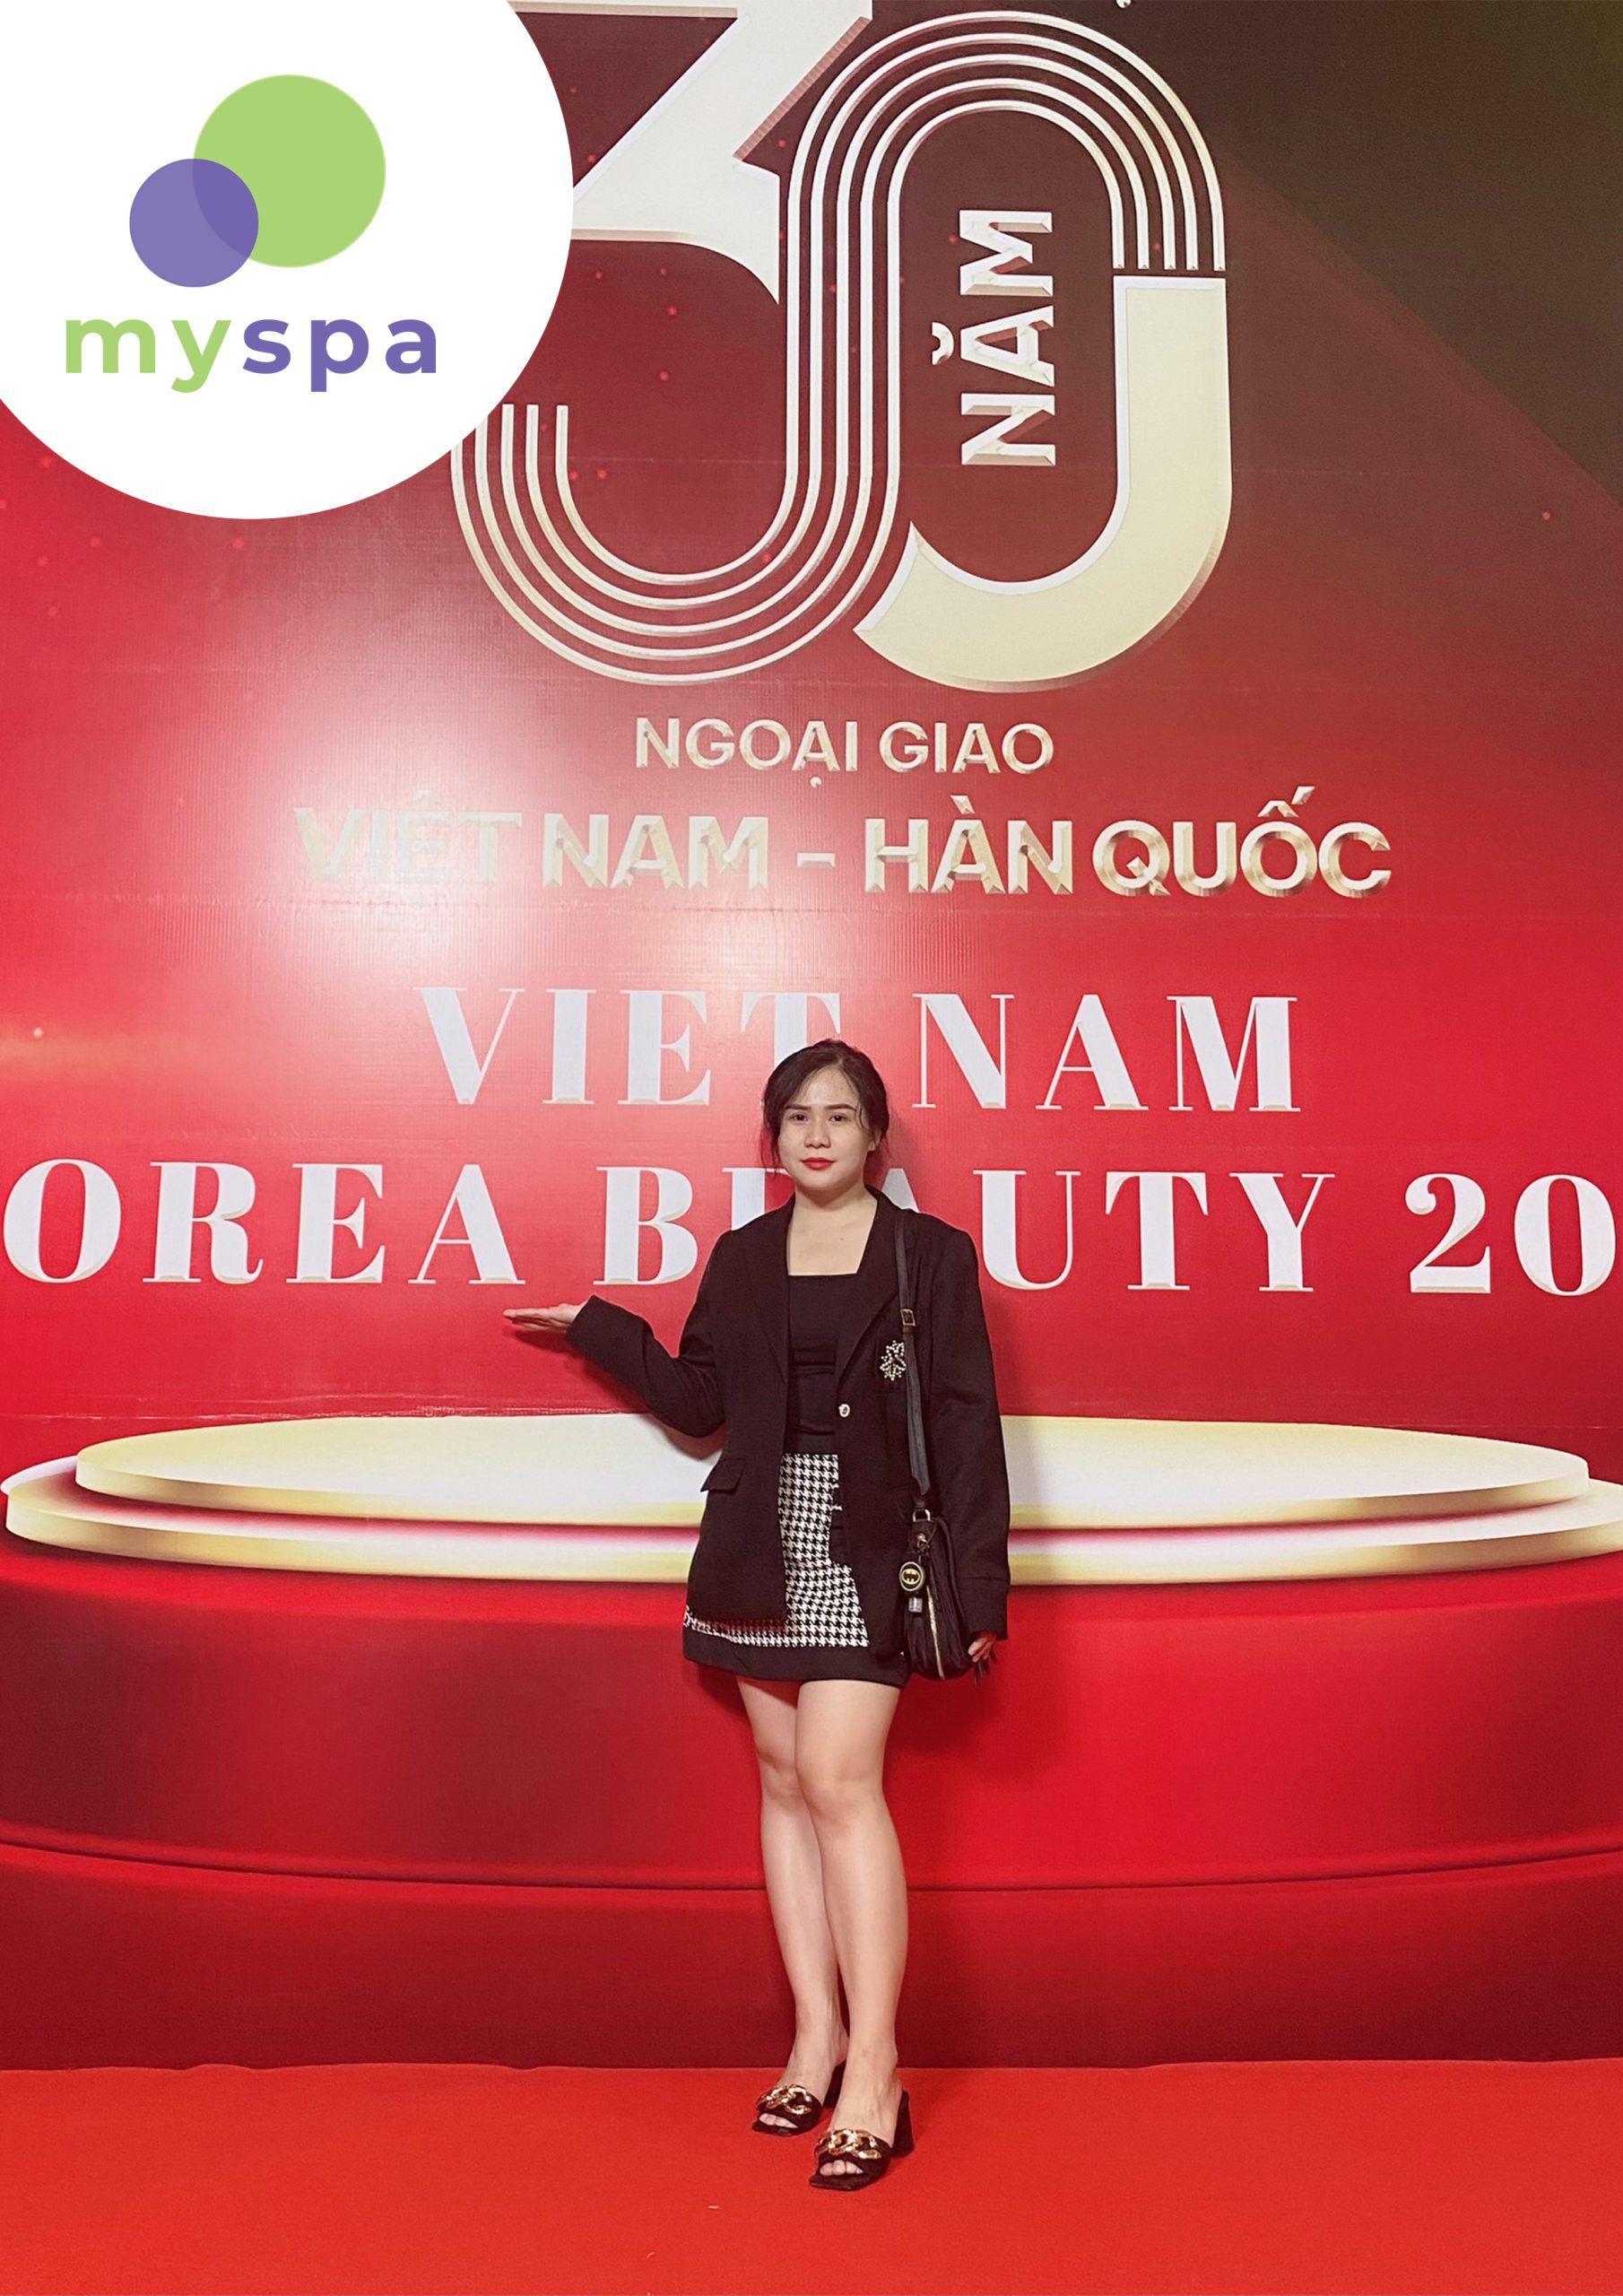 Myspa tại sự kiện “Việt Nam Korea Beauty 2022”